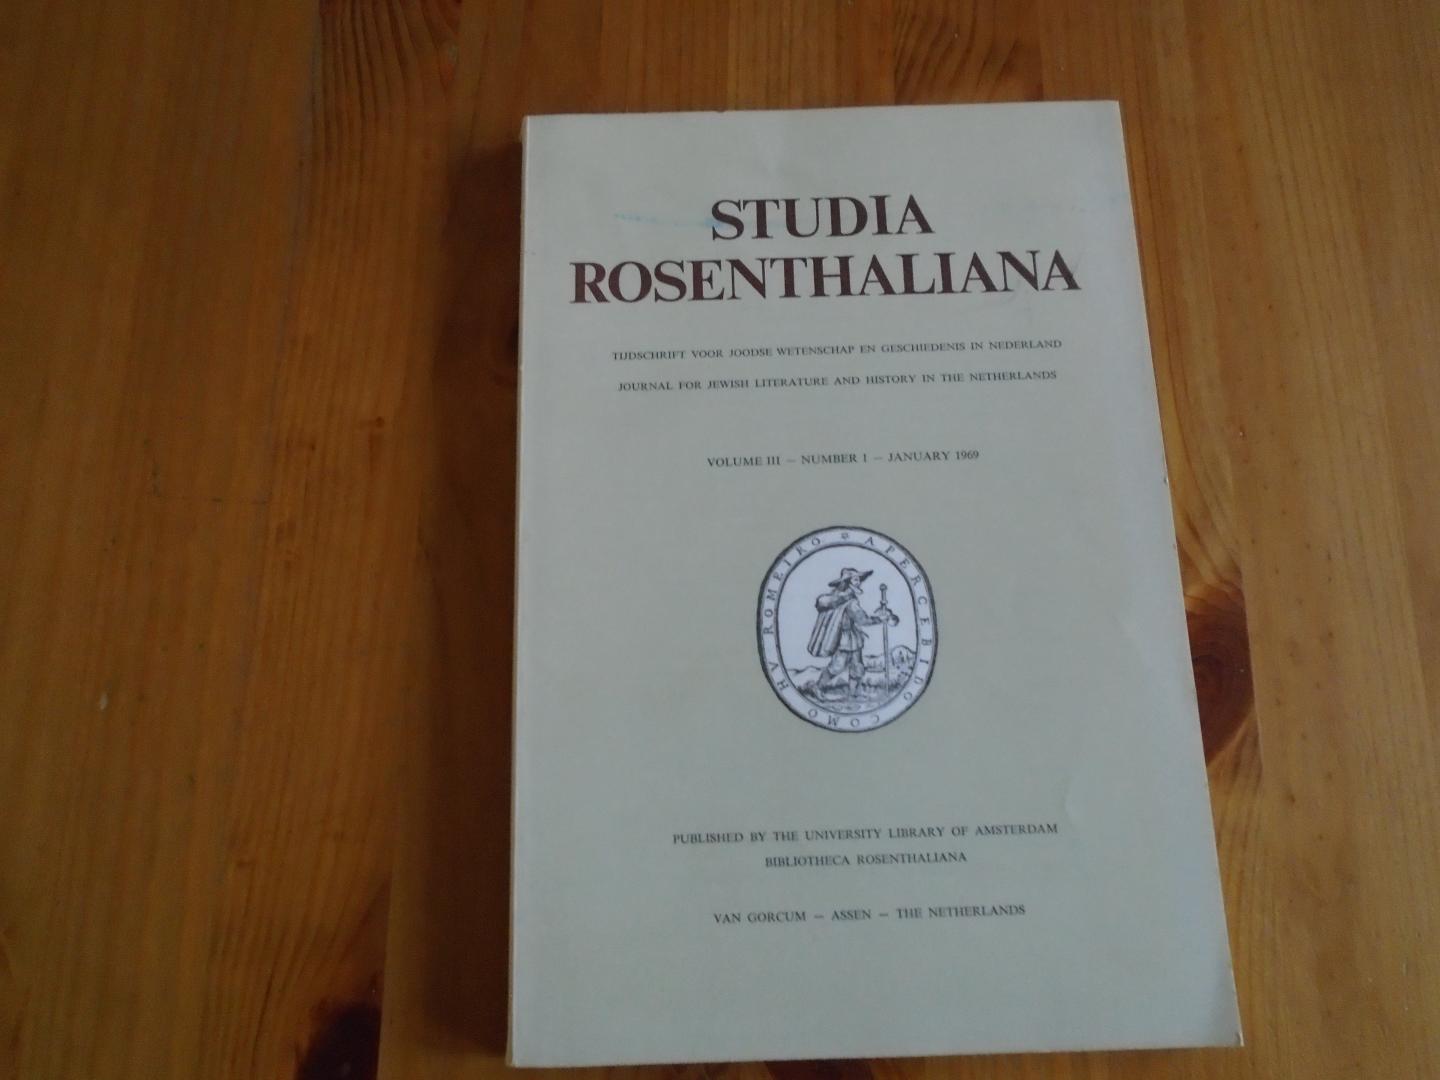  - Studia Rosenthaliana. Volume III, nr. 1